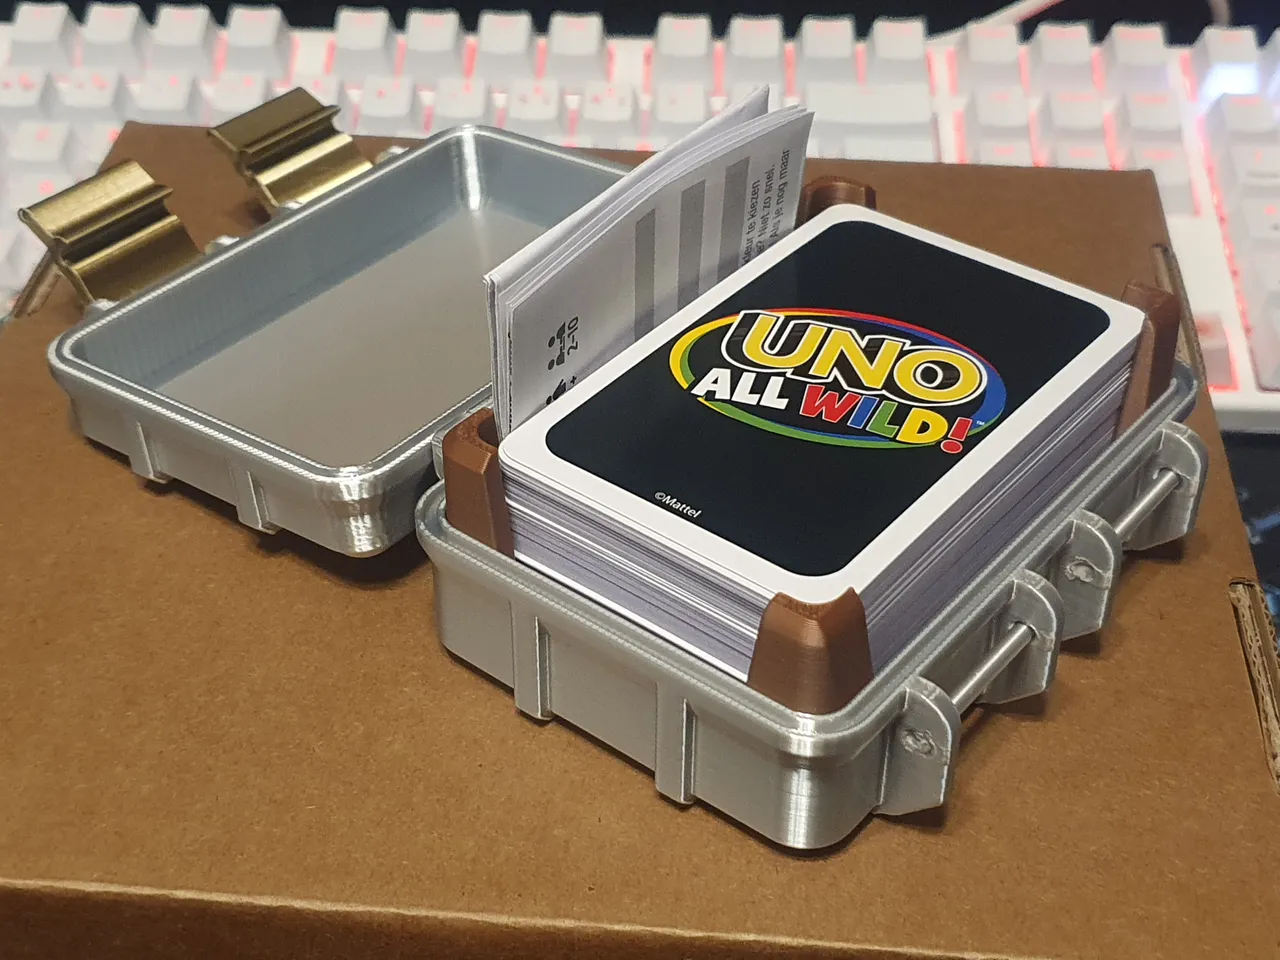 UNO All Wild Card Box (2 color) by Gino Goole